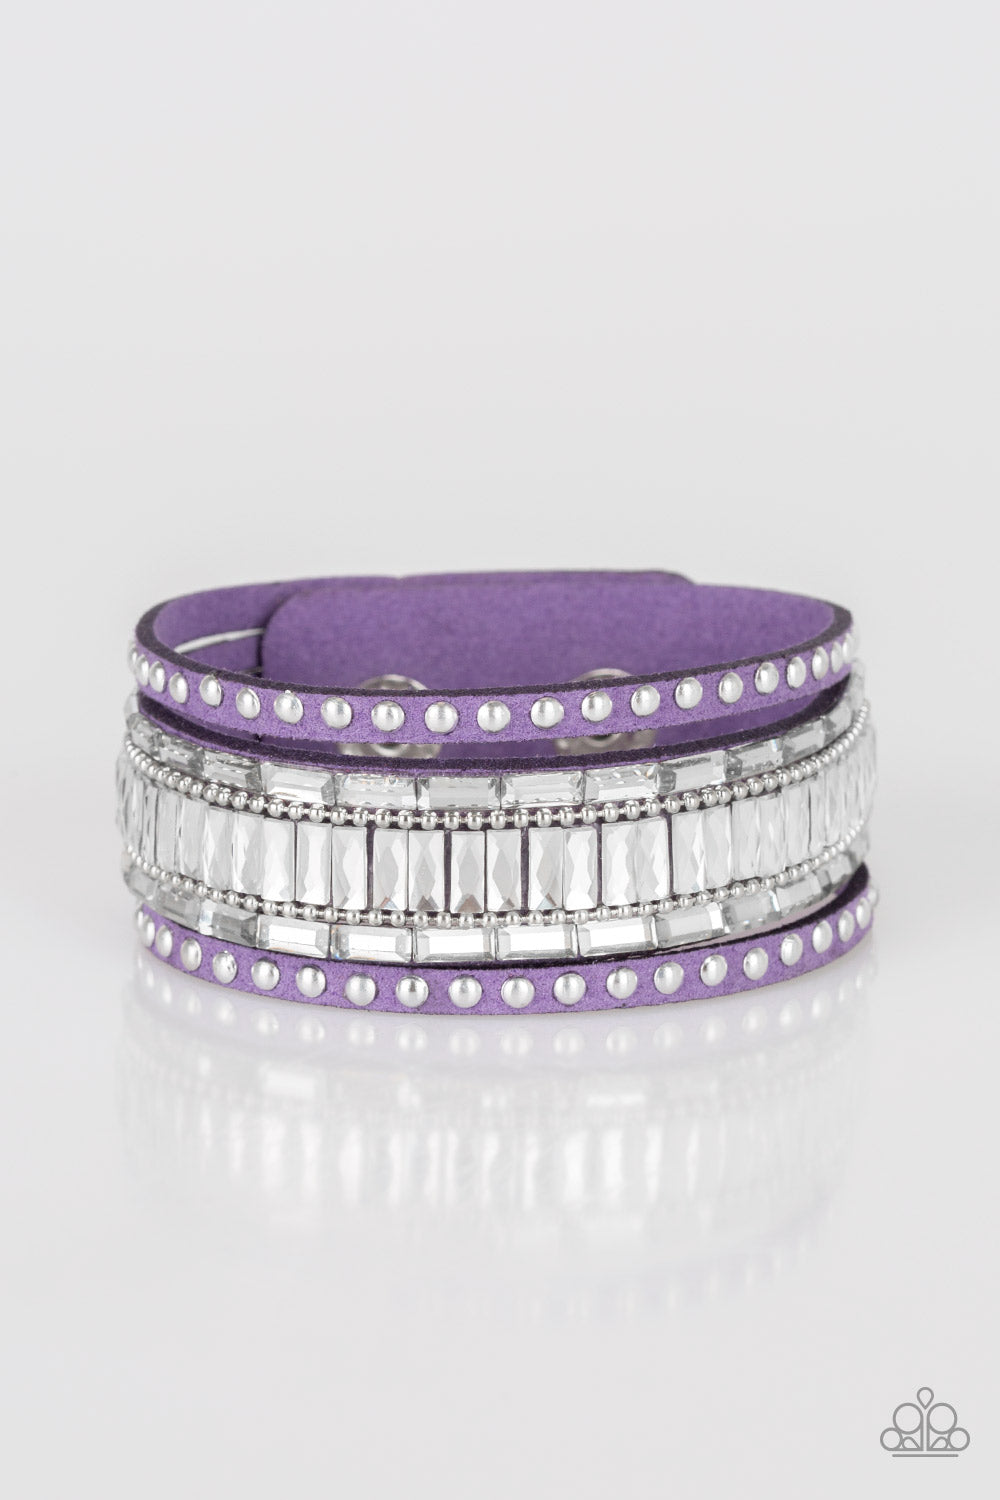 five-dollar-jewelry-rock-star-rocker-purple-bracelet-paparazzi-accessories